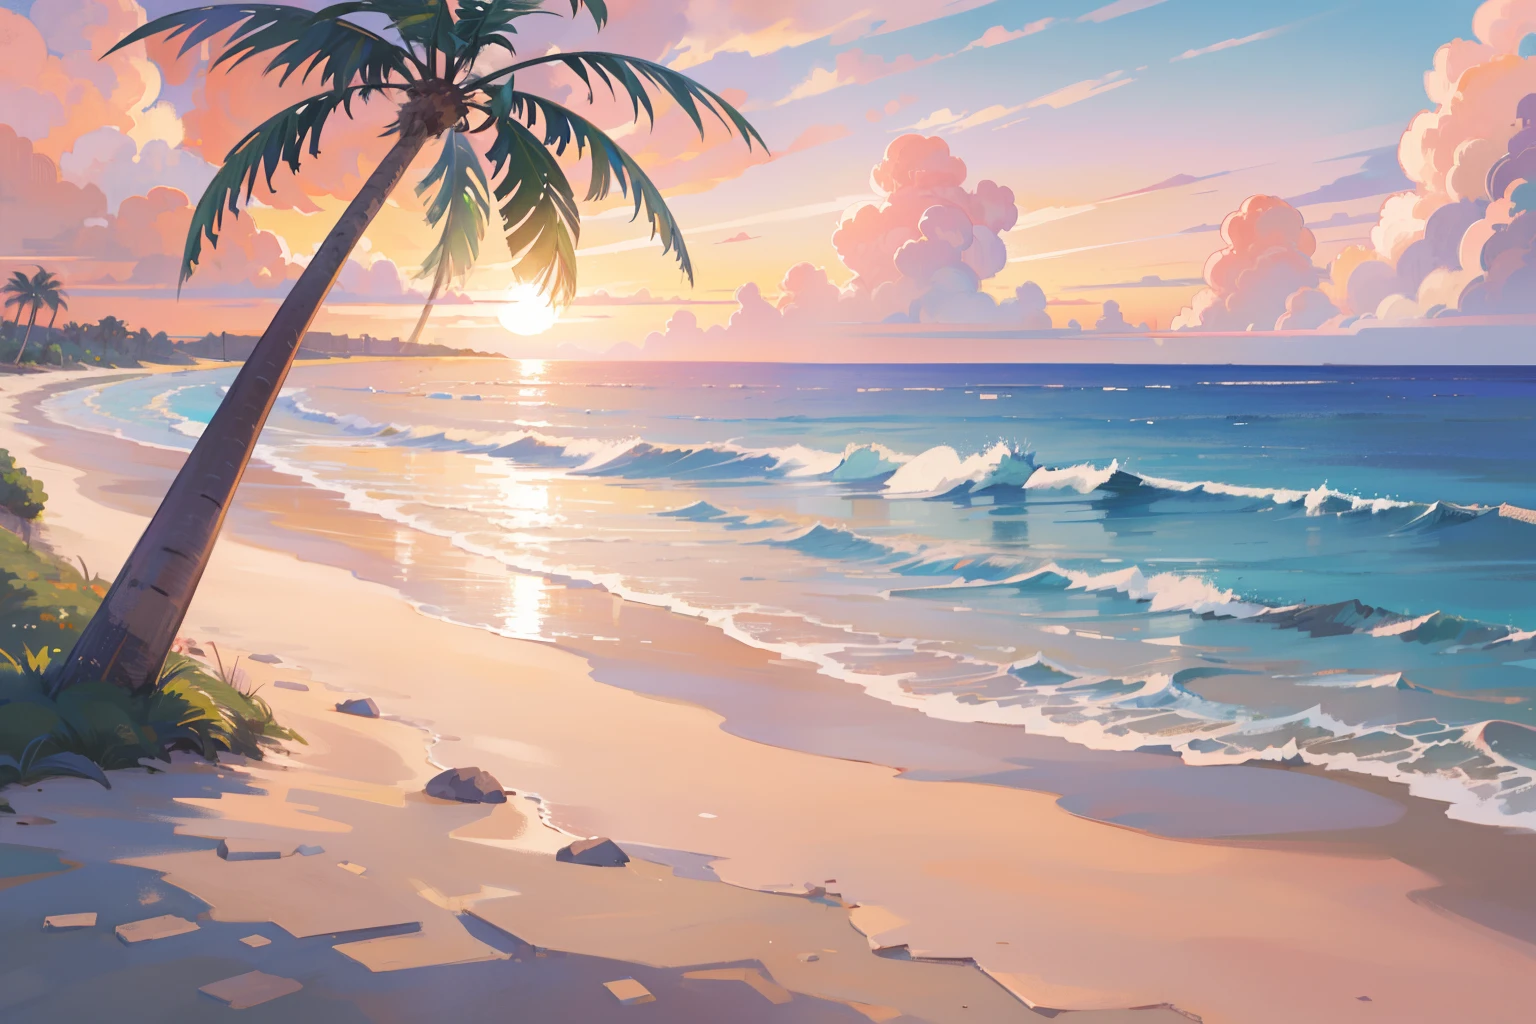 (傑作), 最高品質, 超高解像度, 美しい景色, 詳細な風景, (温かみのあるパステルカラー), ビーチ, colorful ビーチ, ピンク色の砂, ヤシの木, 海, 日没